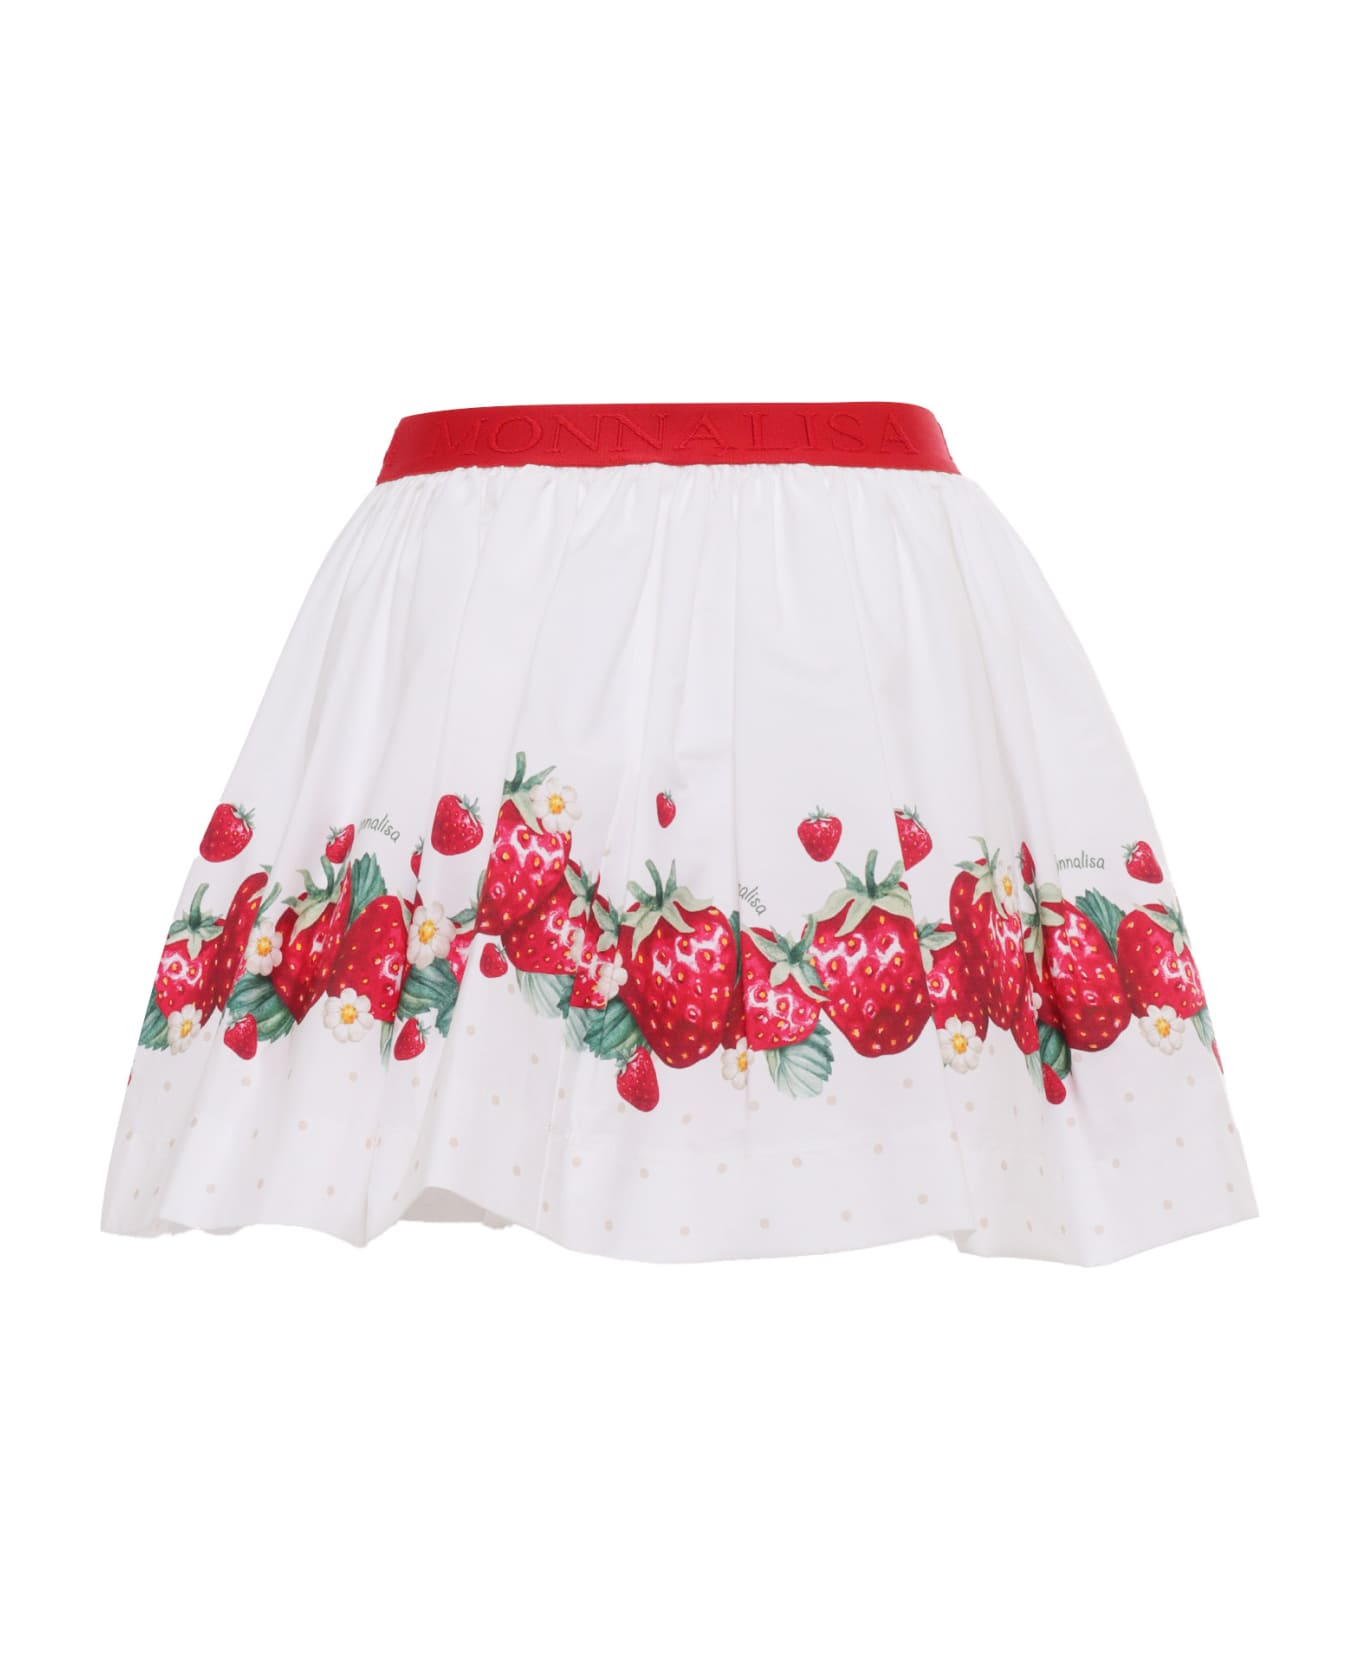 Monnalisa White Skirt With Strawberries - WHITE